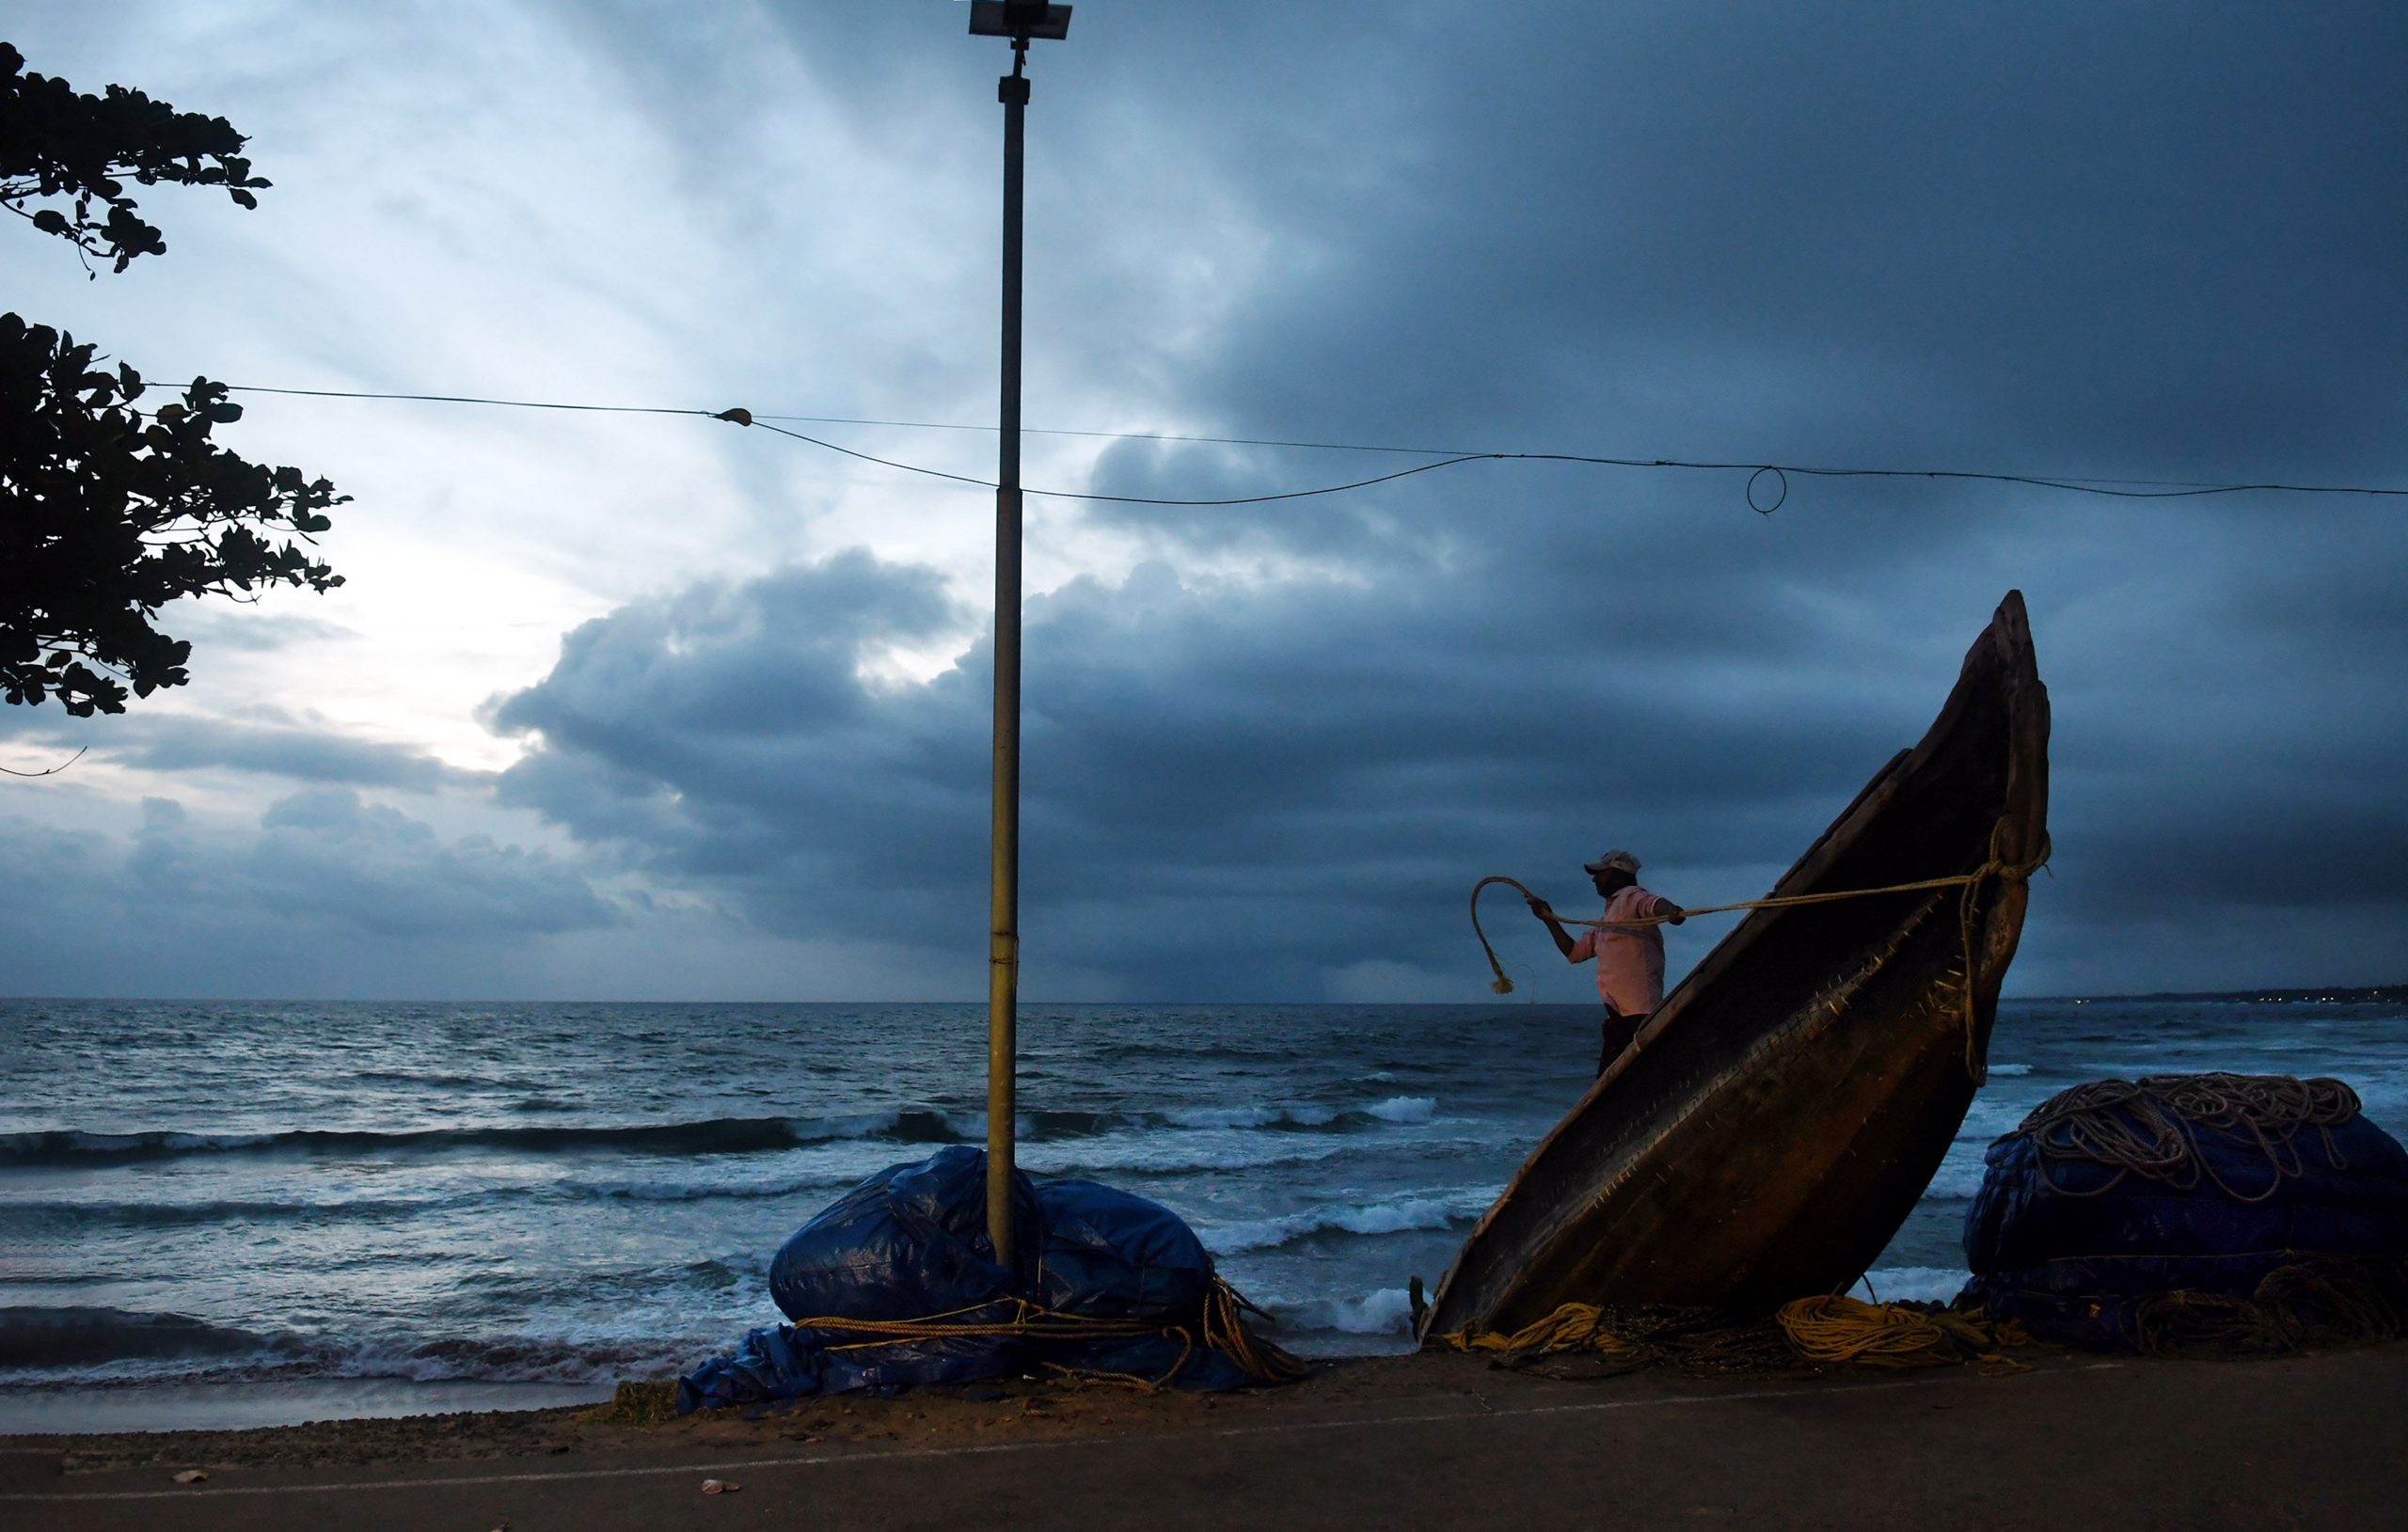 Kerala coasts to witness rapid sea surge in near future, warn experts